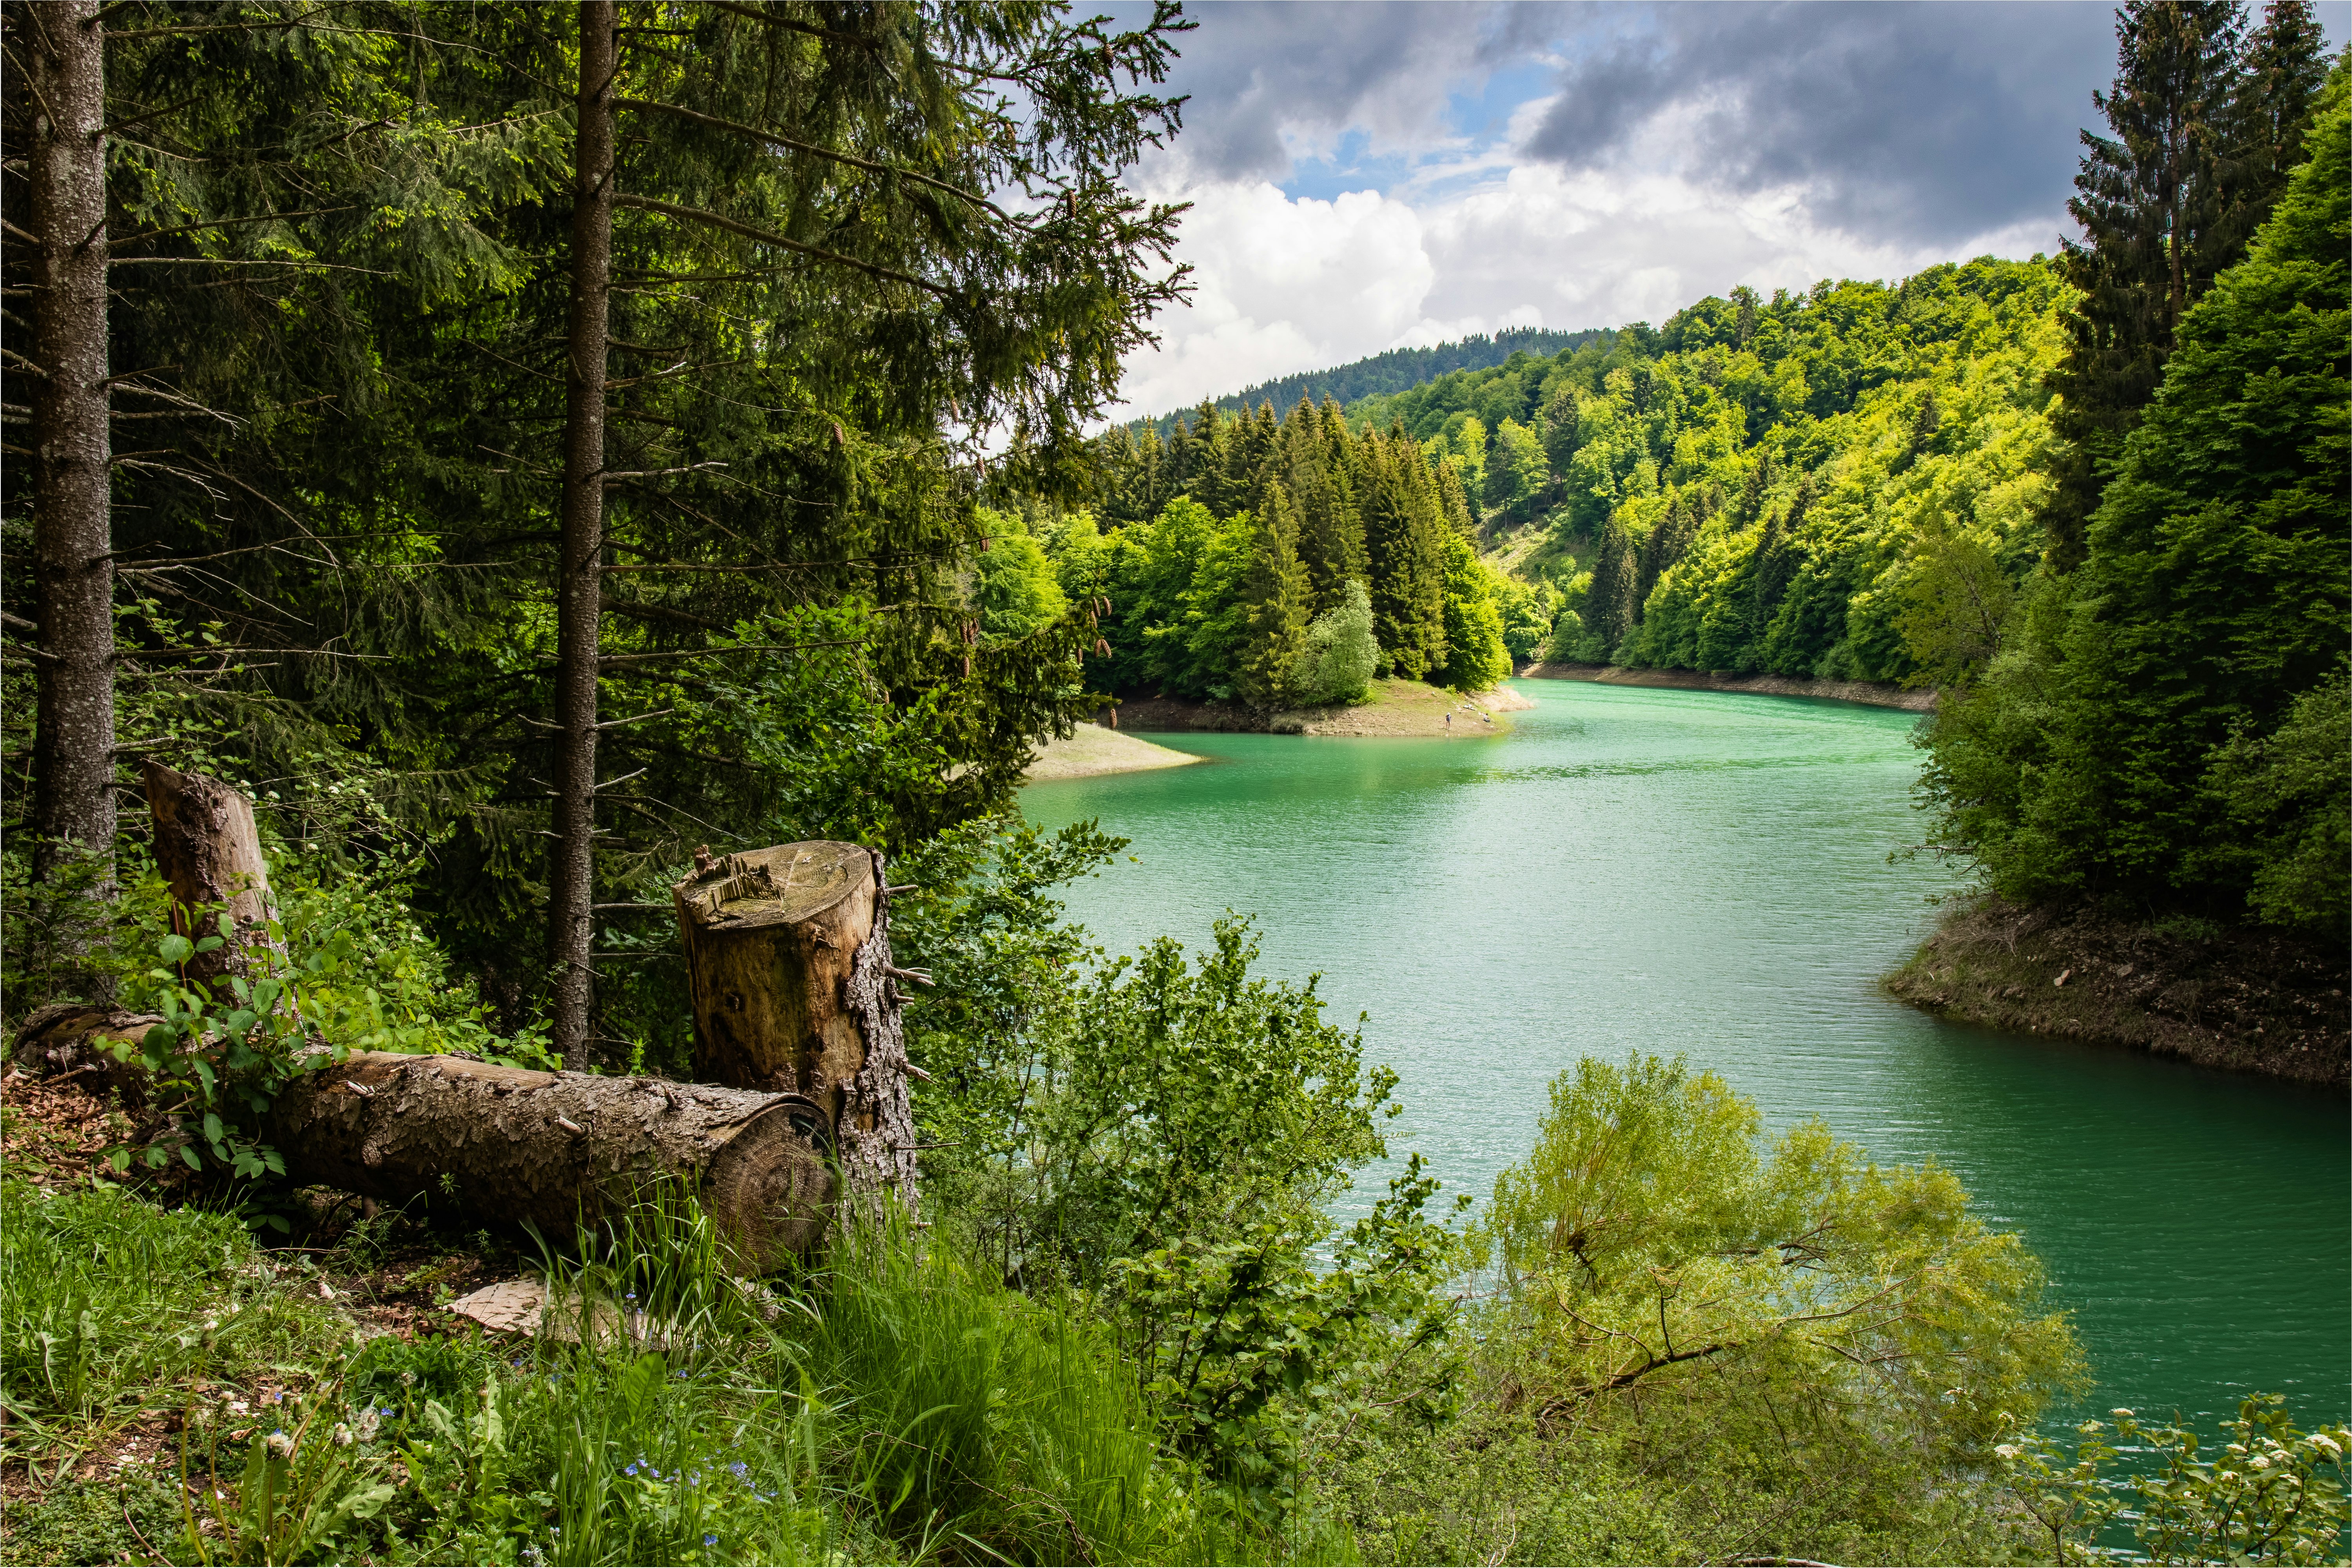 View of Pra da Stua artificial lake's. (Trentino alto-adige, Italy)